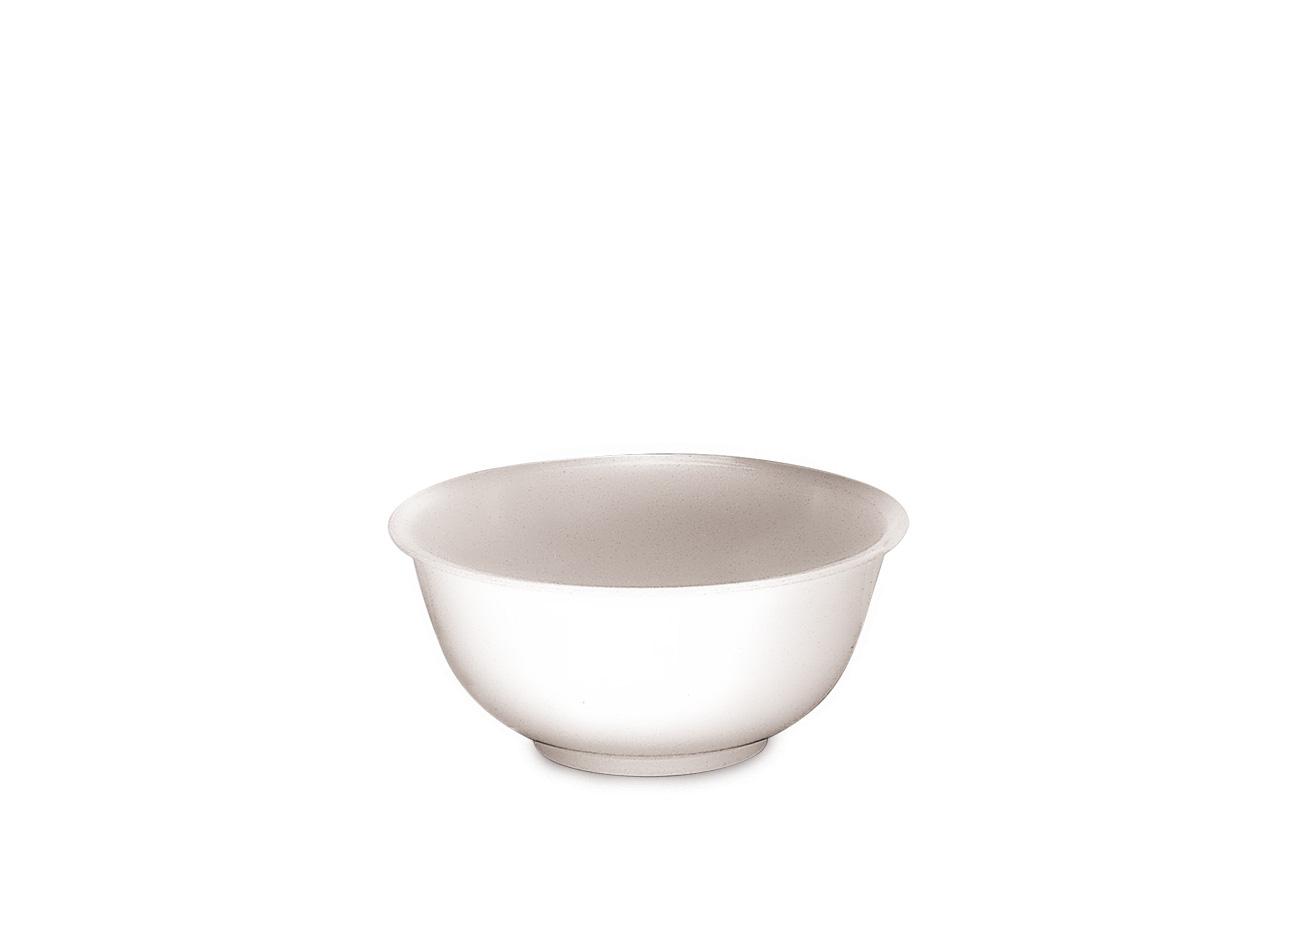 Μπωλ Aναμείξης Πλαστικό Λευκό Araven 23,5×11εκ. AR00001072 (Υλικό: Πλαστικό, Χρώμα: Λευκό) – Araven – AR00001072